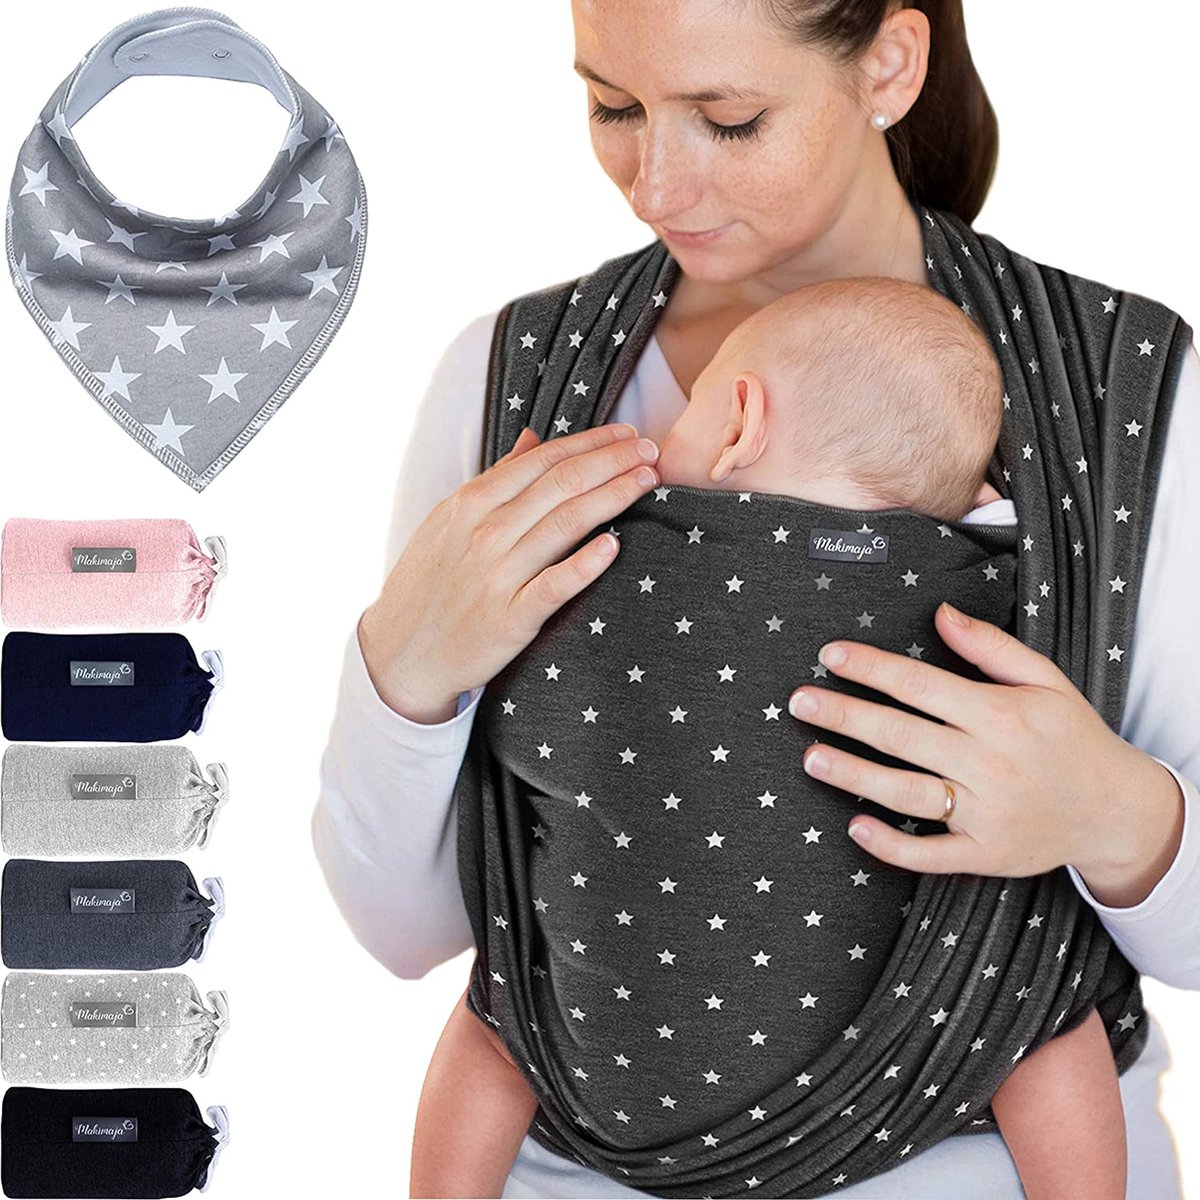 Écharpe de portage pour bébé jusqu'a 15kg,réglable, unisex - Porte